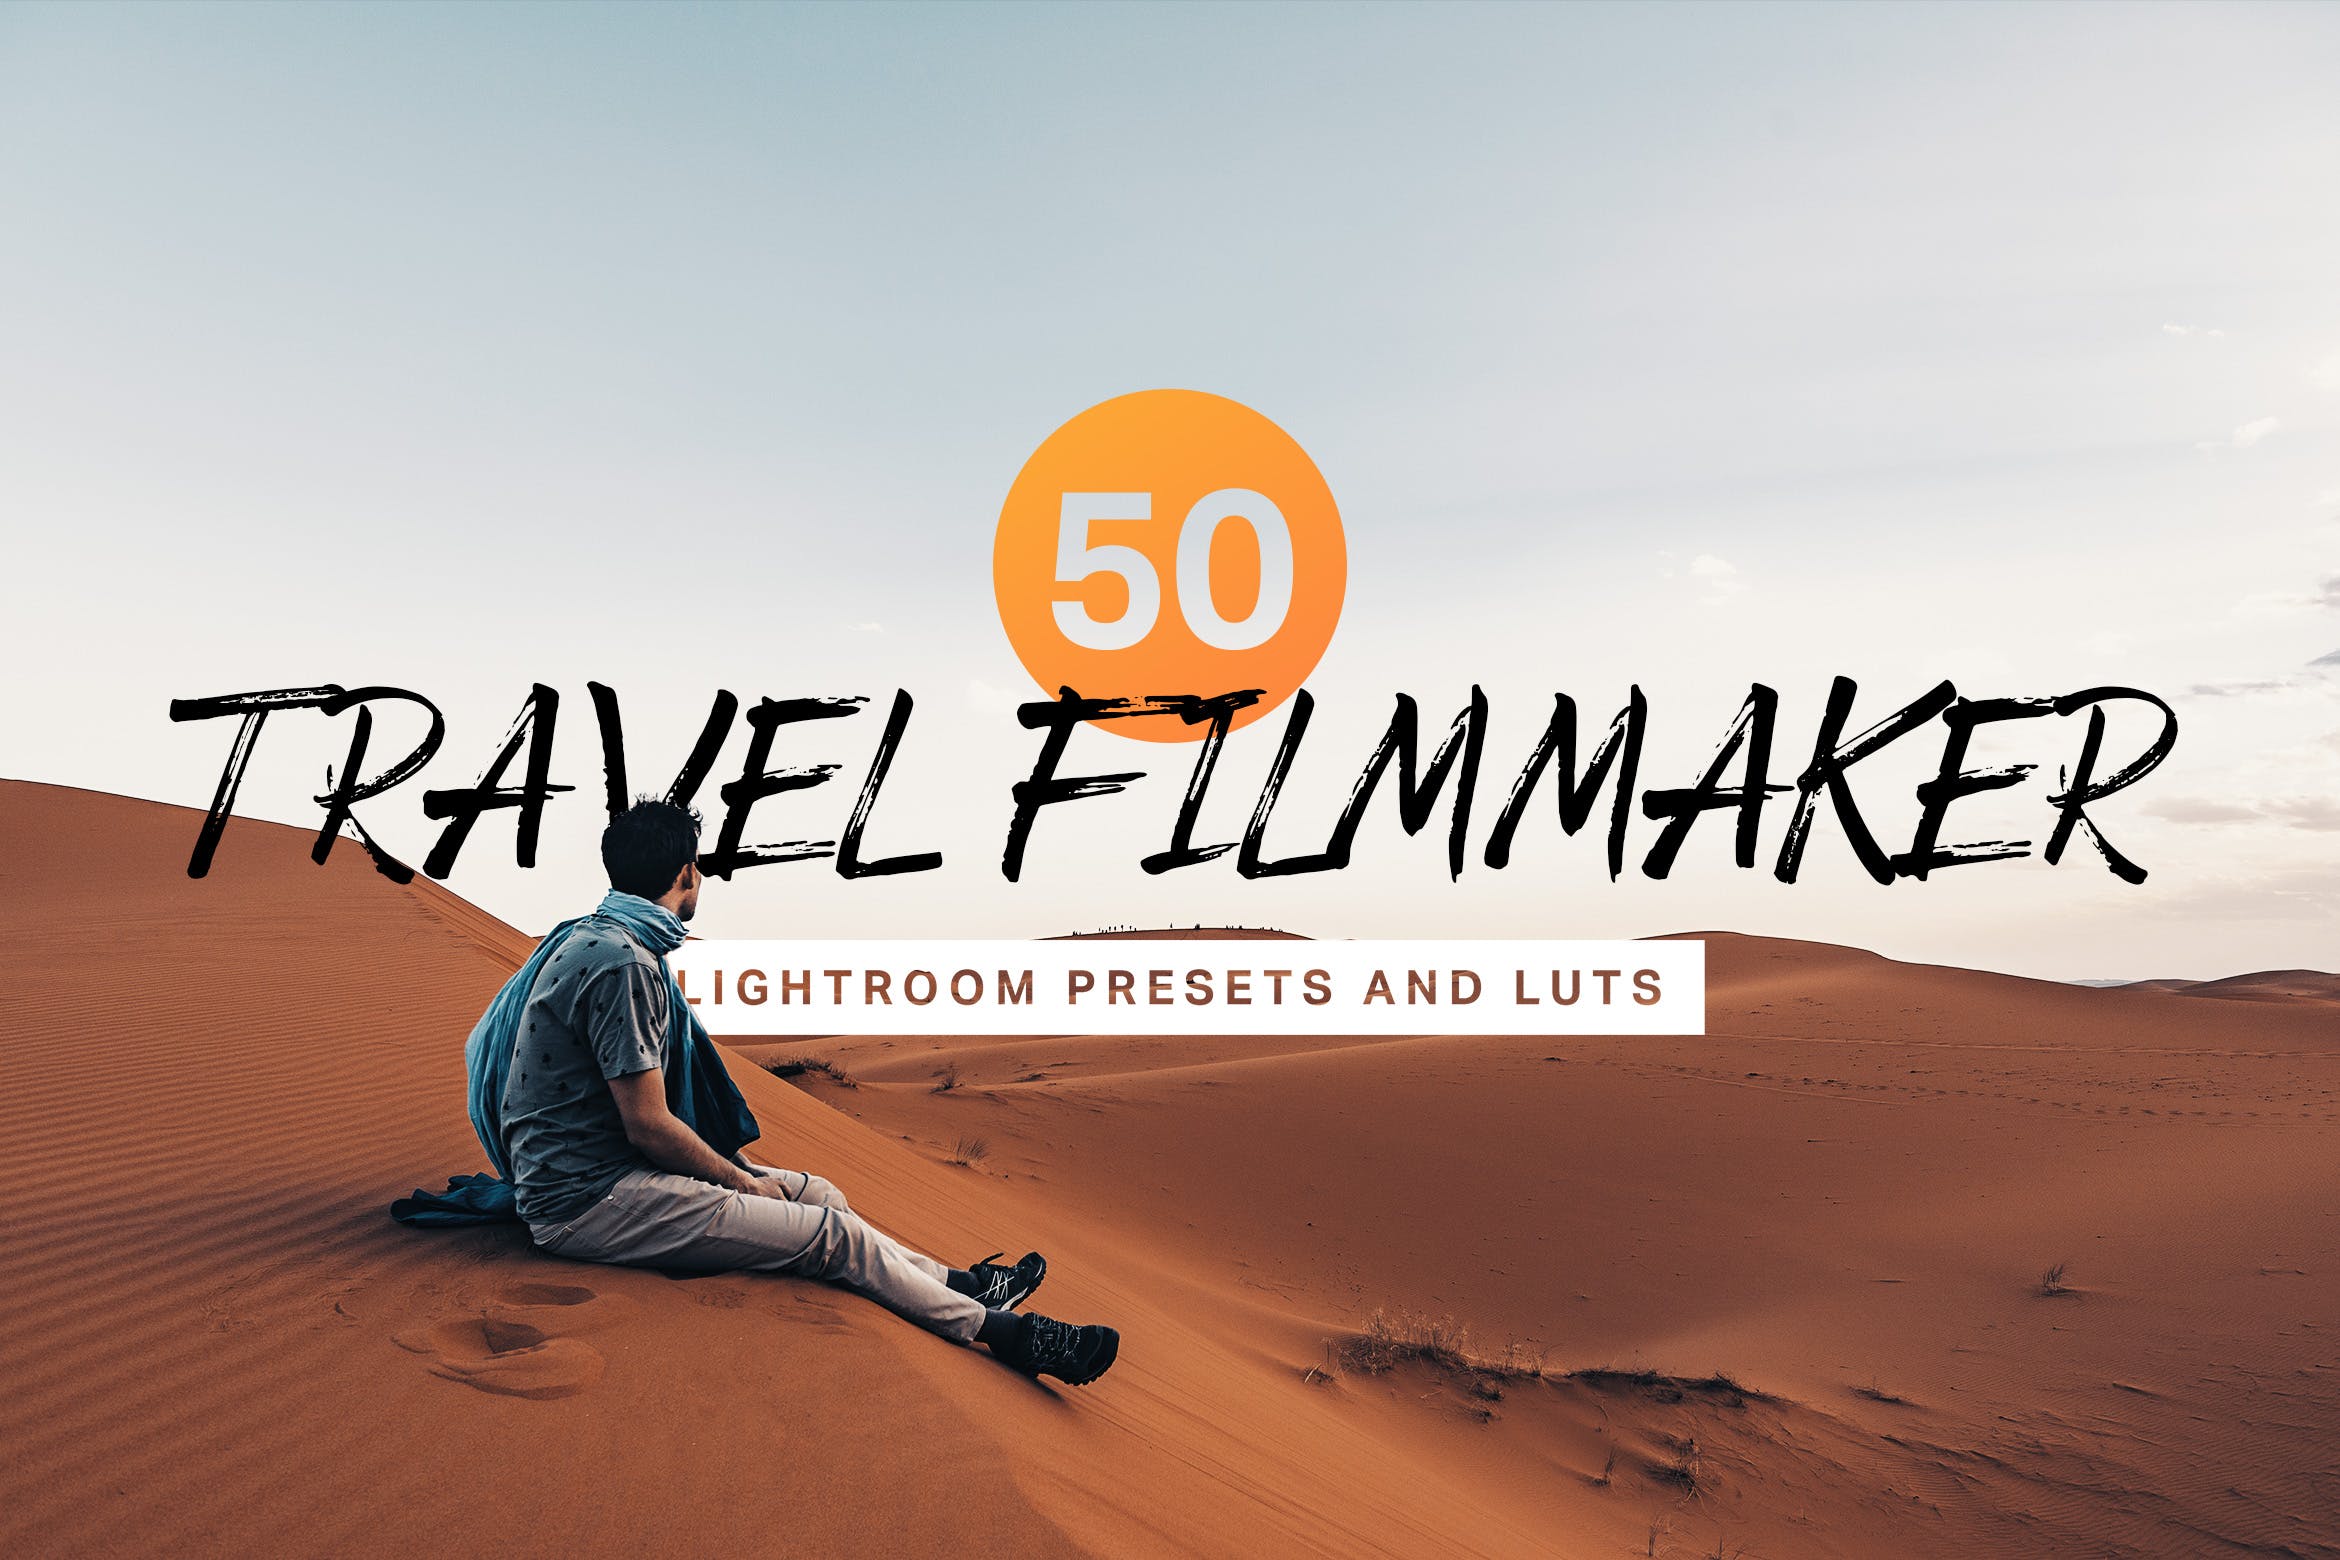 50款旅行照片电影色调滤镜亿图网易图库精选LR预设 50 Travel Filmmaker Lightroom Presets and LUTs插图